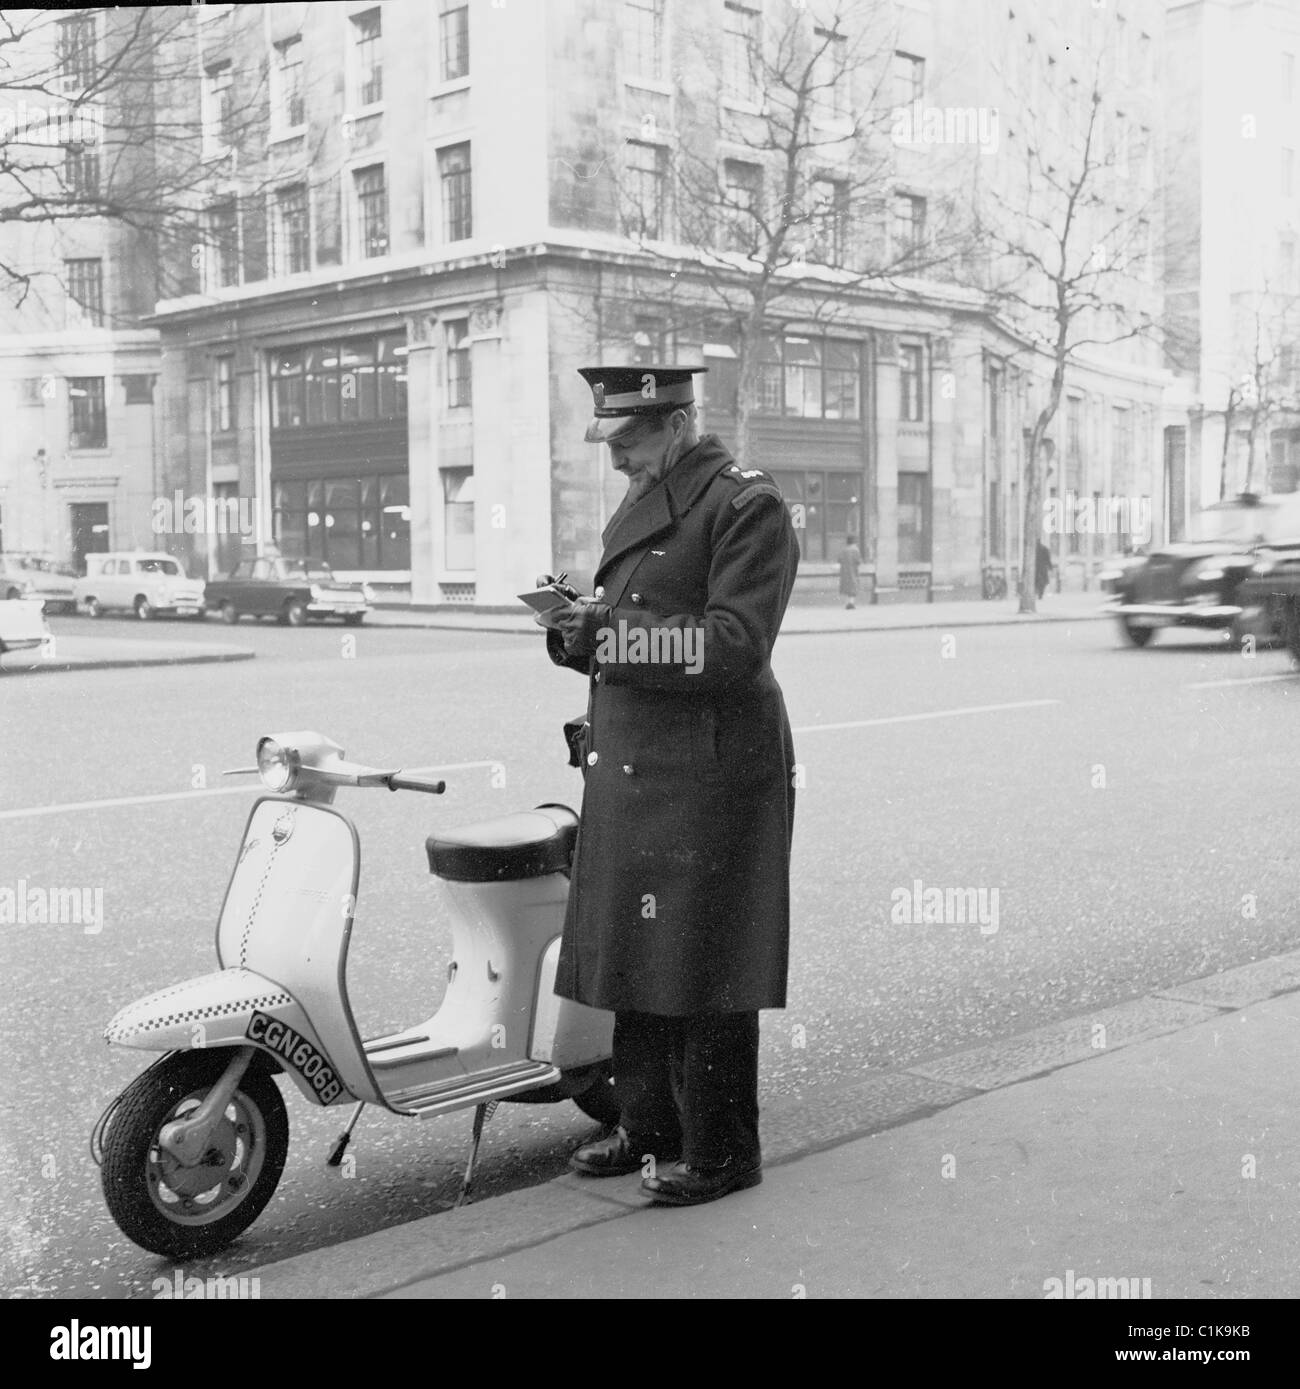 der 1950er Jahre in dieses Geschichtsbild durch J Allan Cash schreibt ein Traffic Warden ein Parkticket für einen Roller nicht falsch geparkt Stockfoto